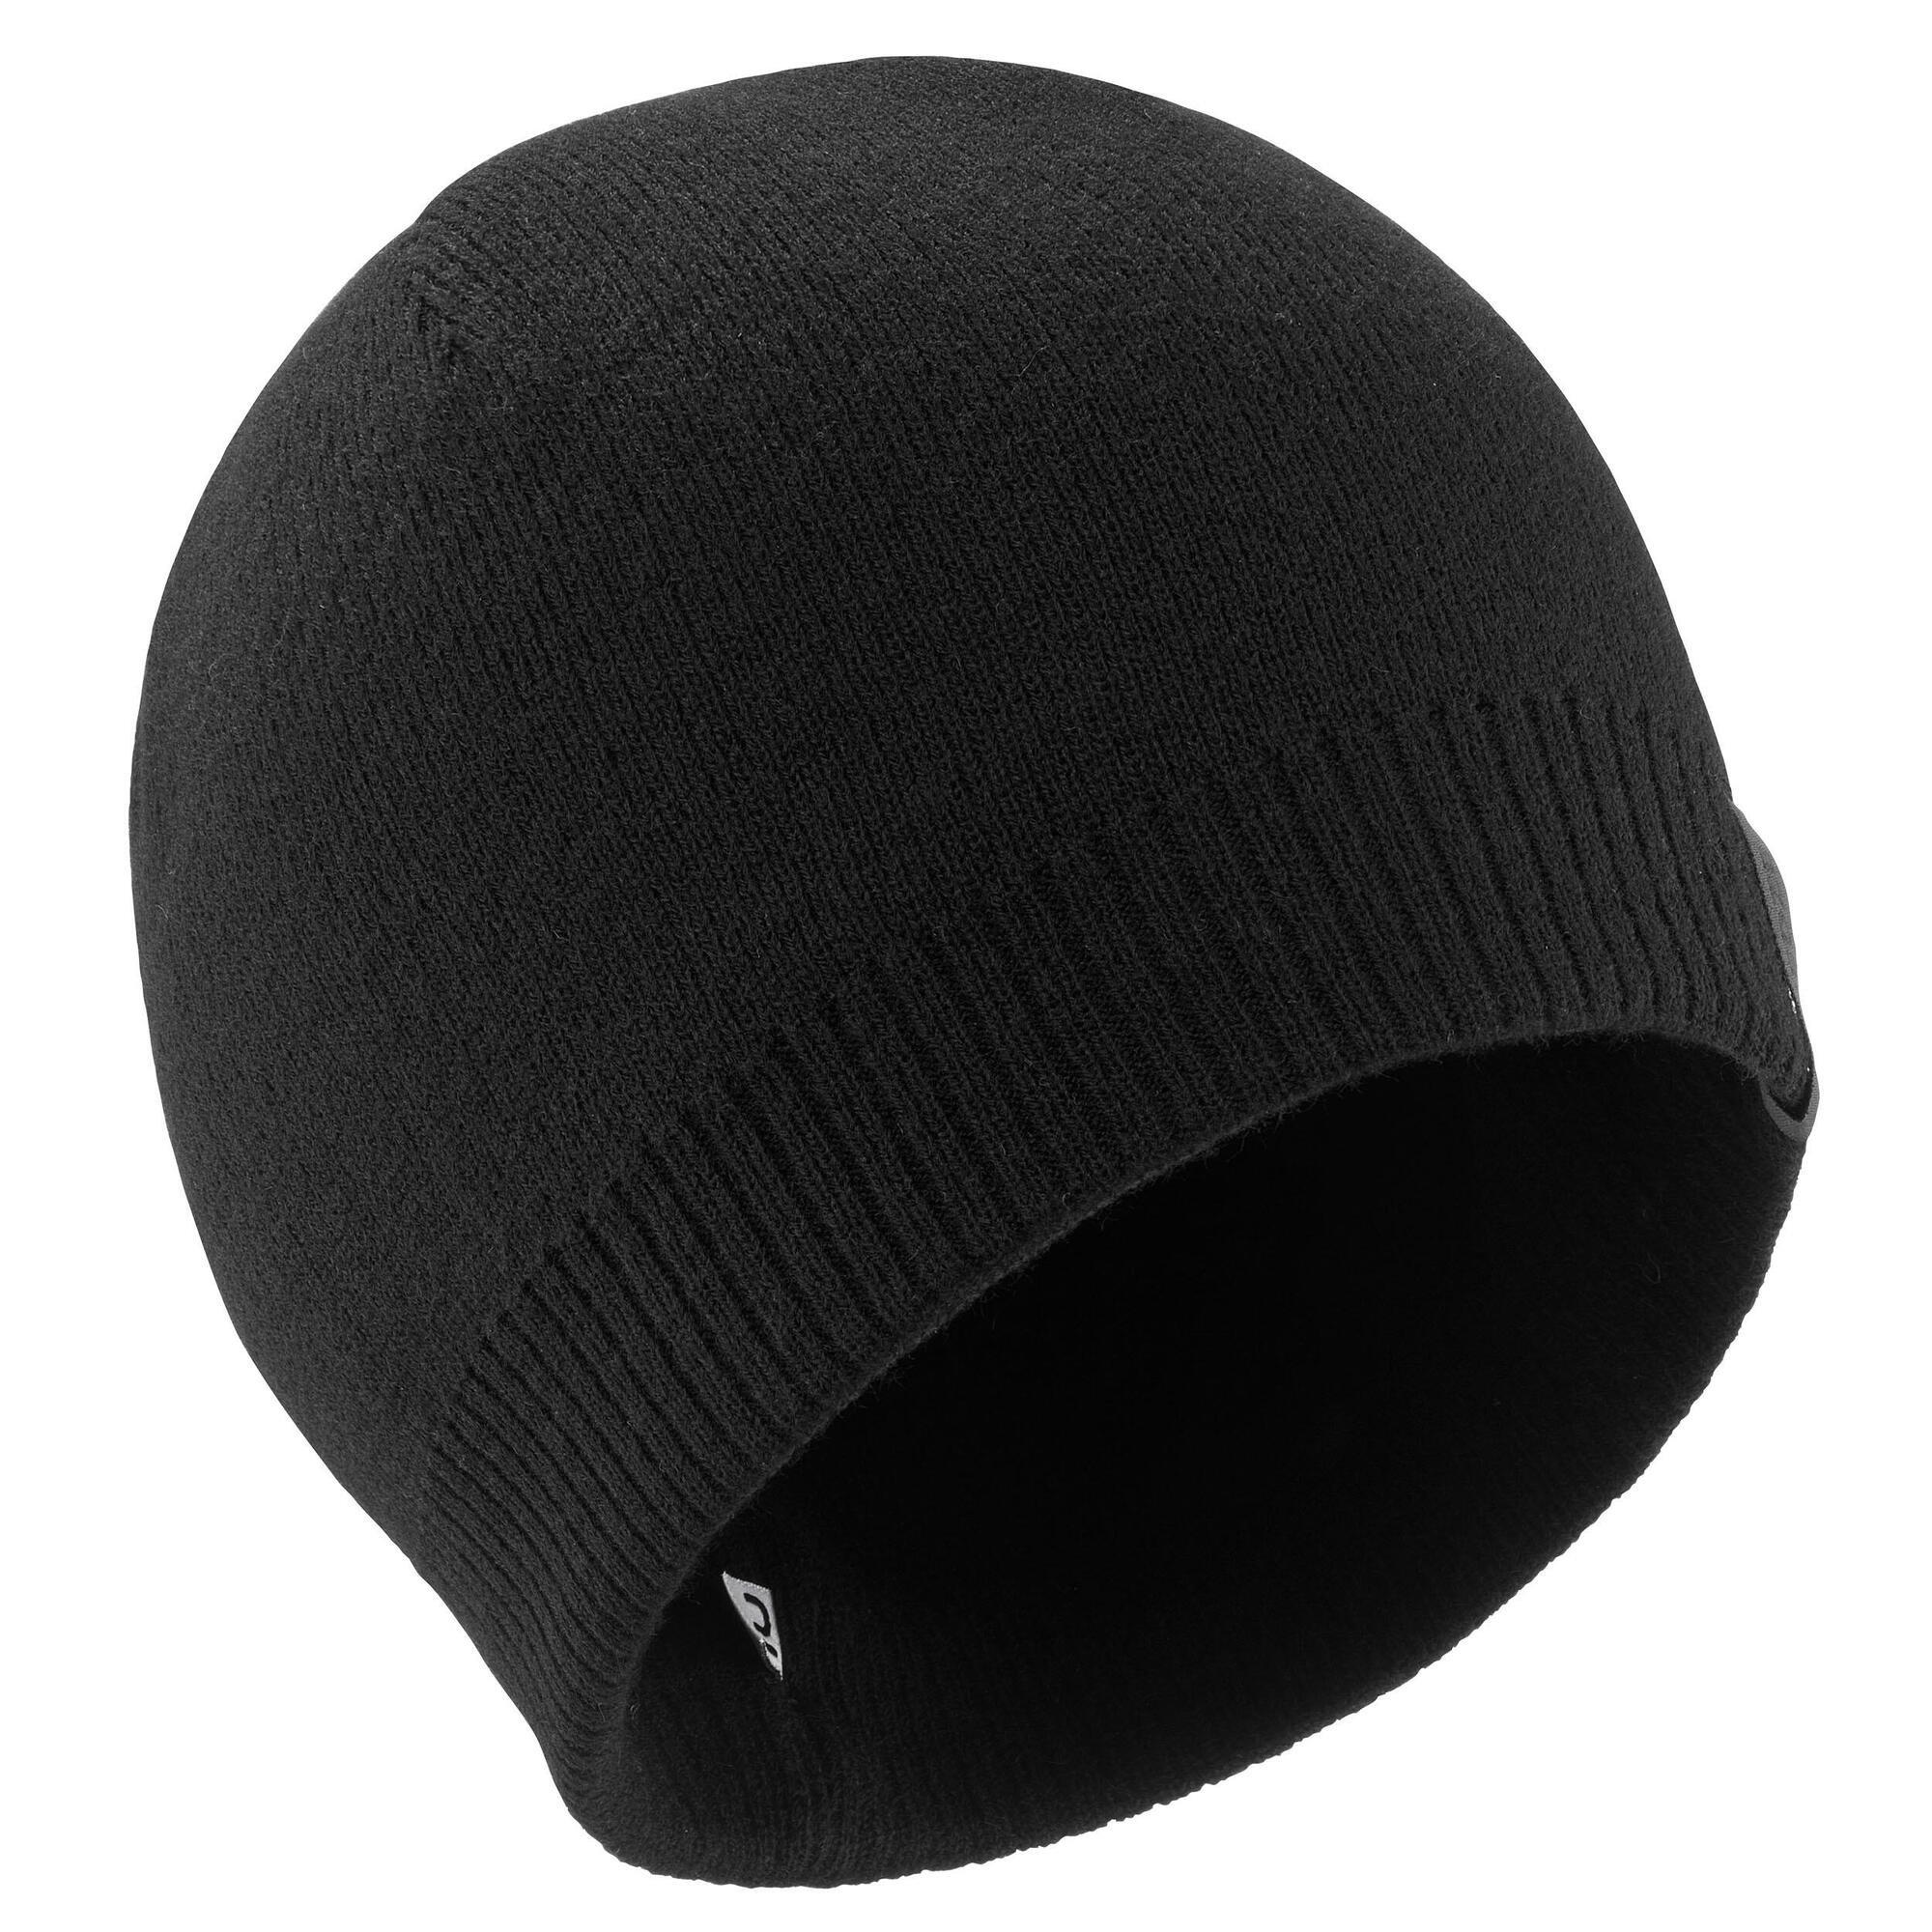 Лыжная шапка Decathlon для взрослых — простая Wedze, черный женская шапка зимняя вязаная шапка акриловая теплая осенняя однотонная лыжная шапка для активного отдыха